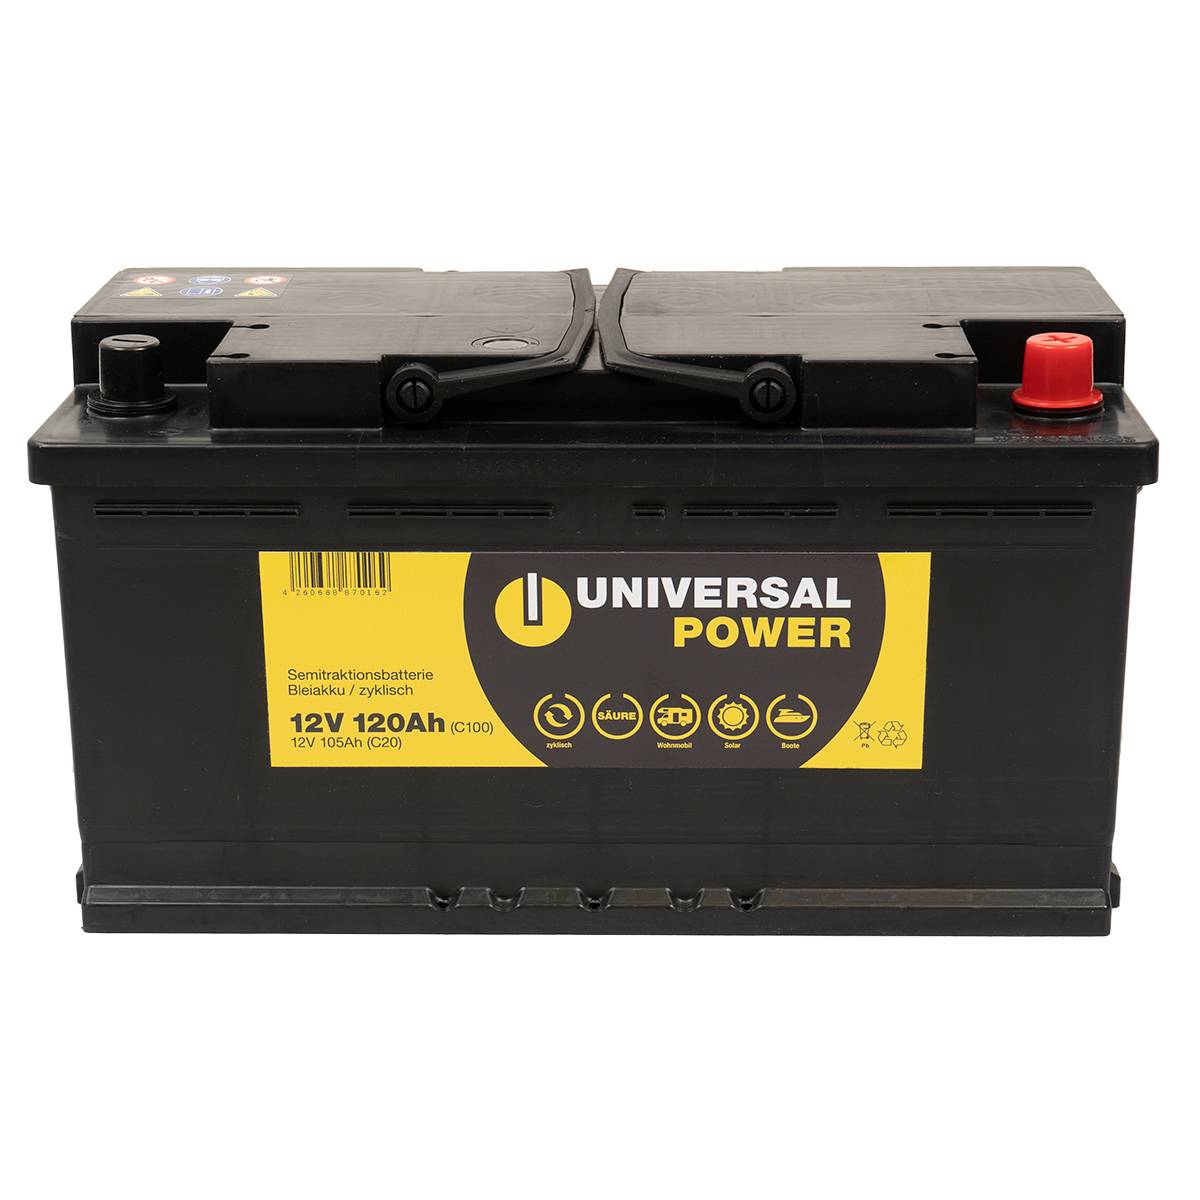 Universal Power Semitraktion UPA12-120 12V 120Ah (C100) Solar Batterie Wohnmobilbatterie zyklenfest